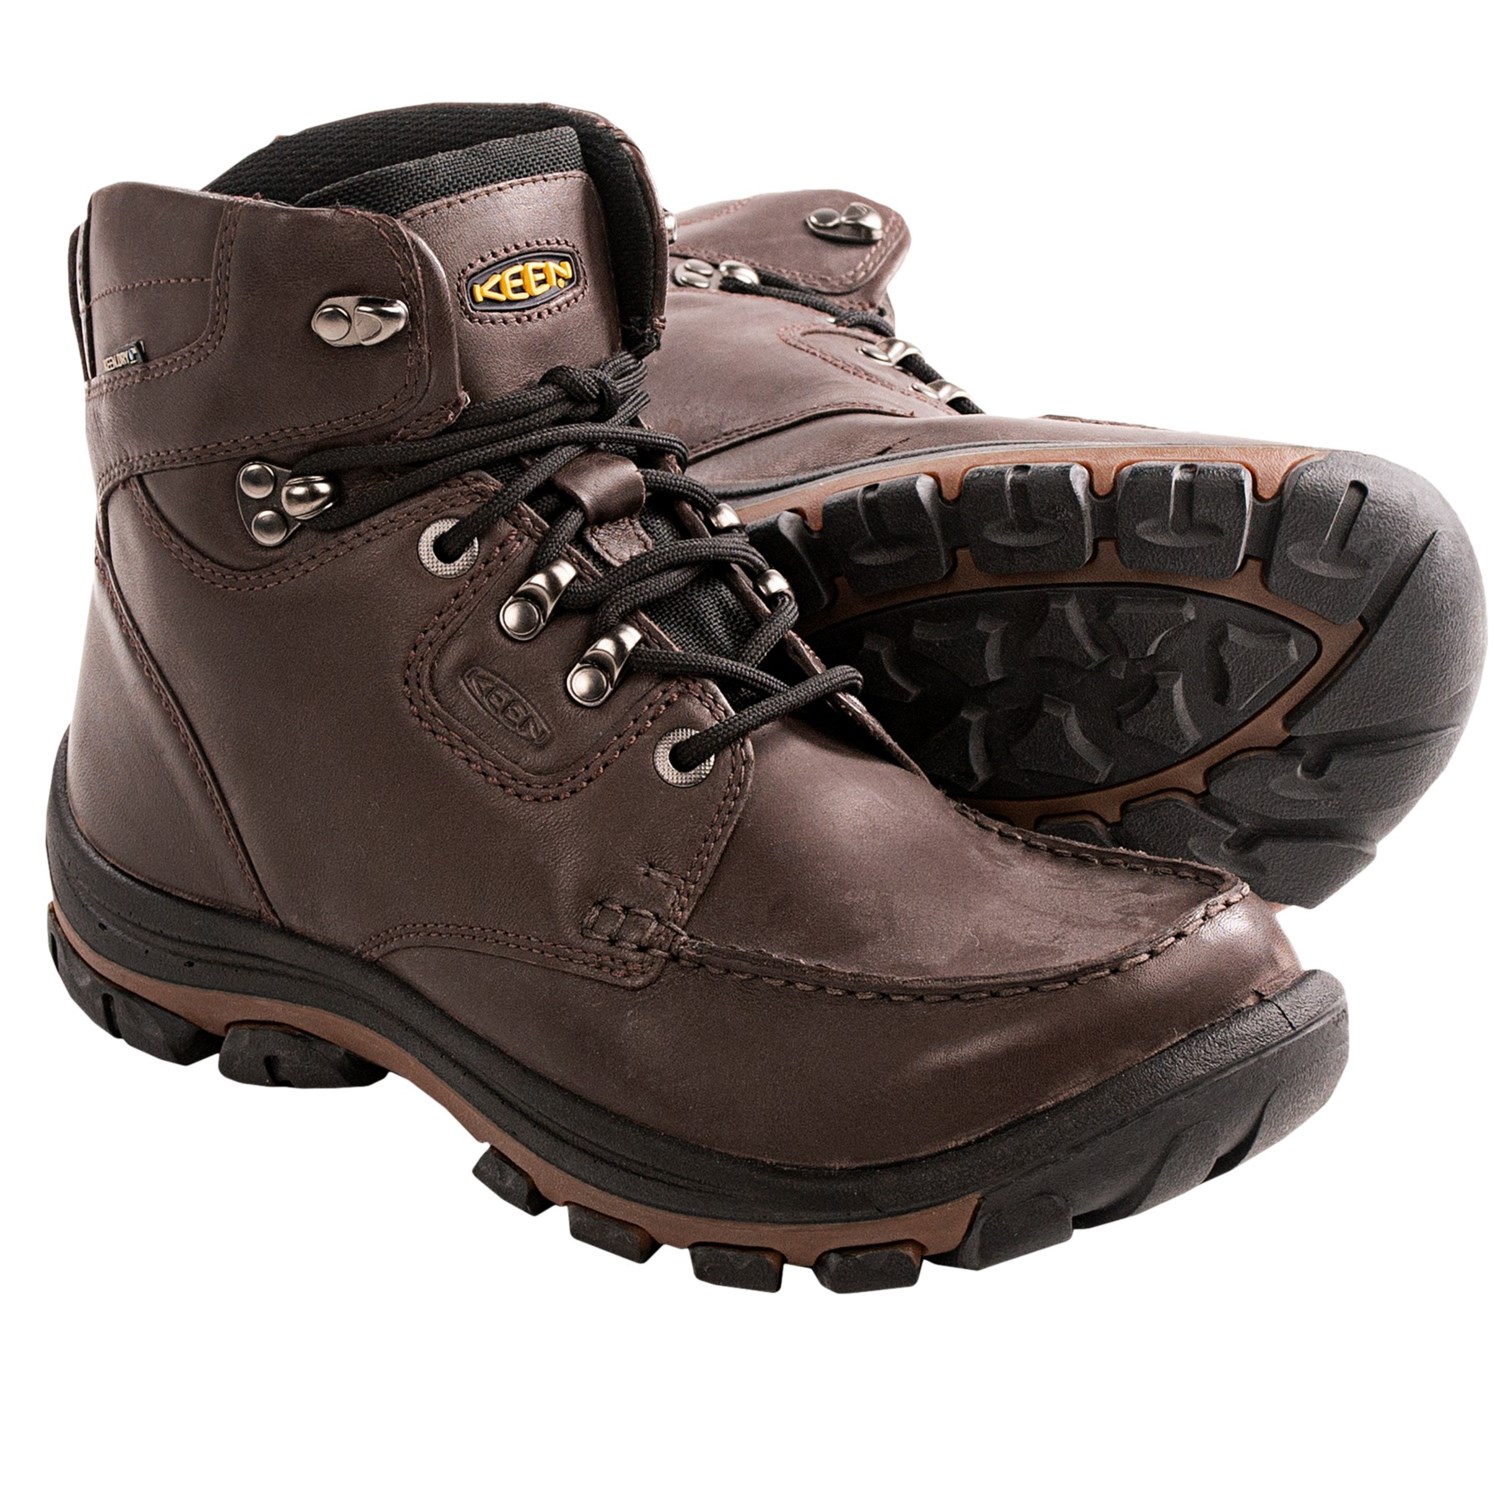 Keen NoPo Boots - Waterproof (For Men) in Brown Full Grain